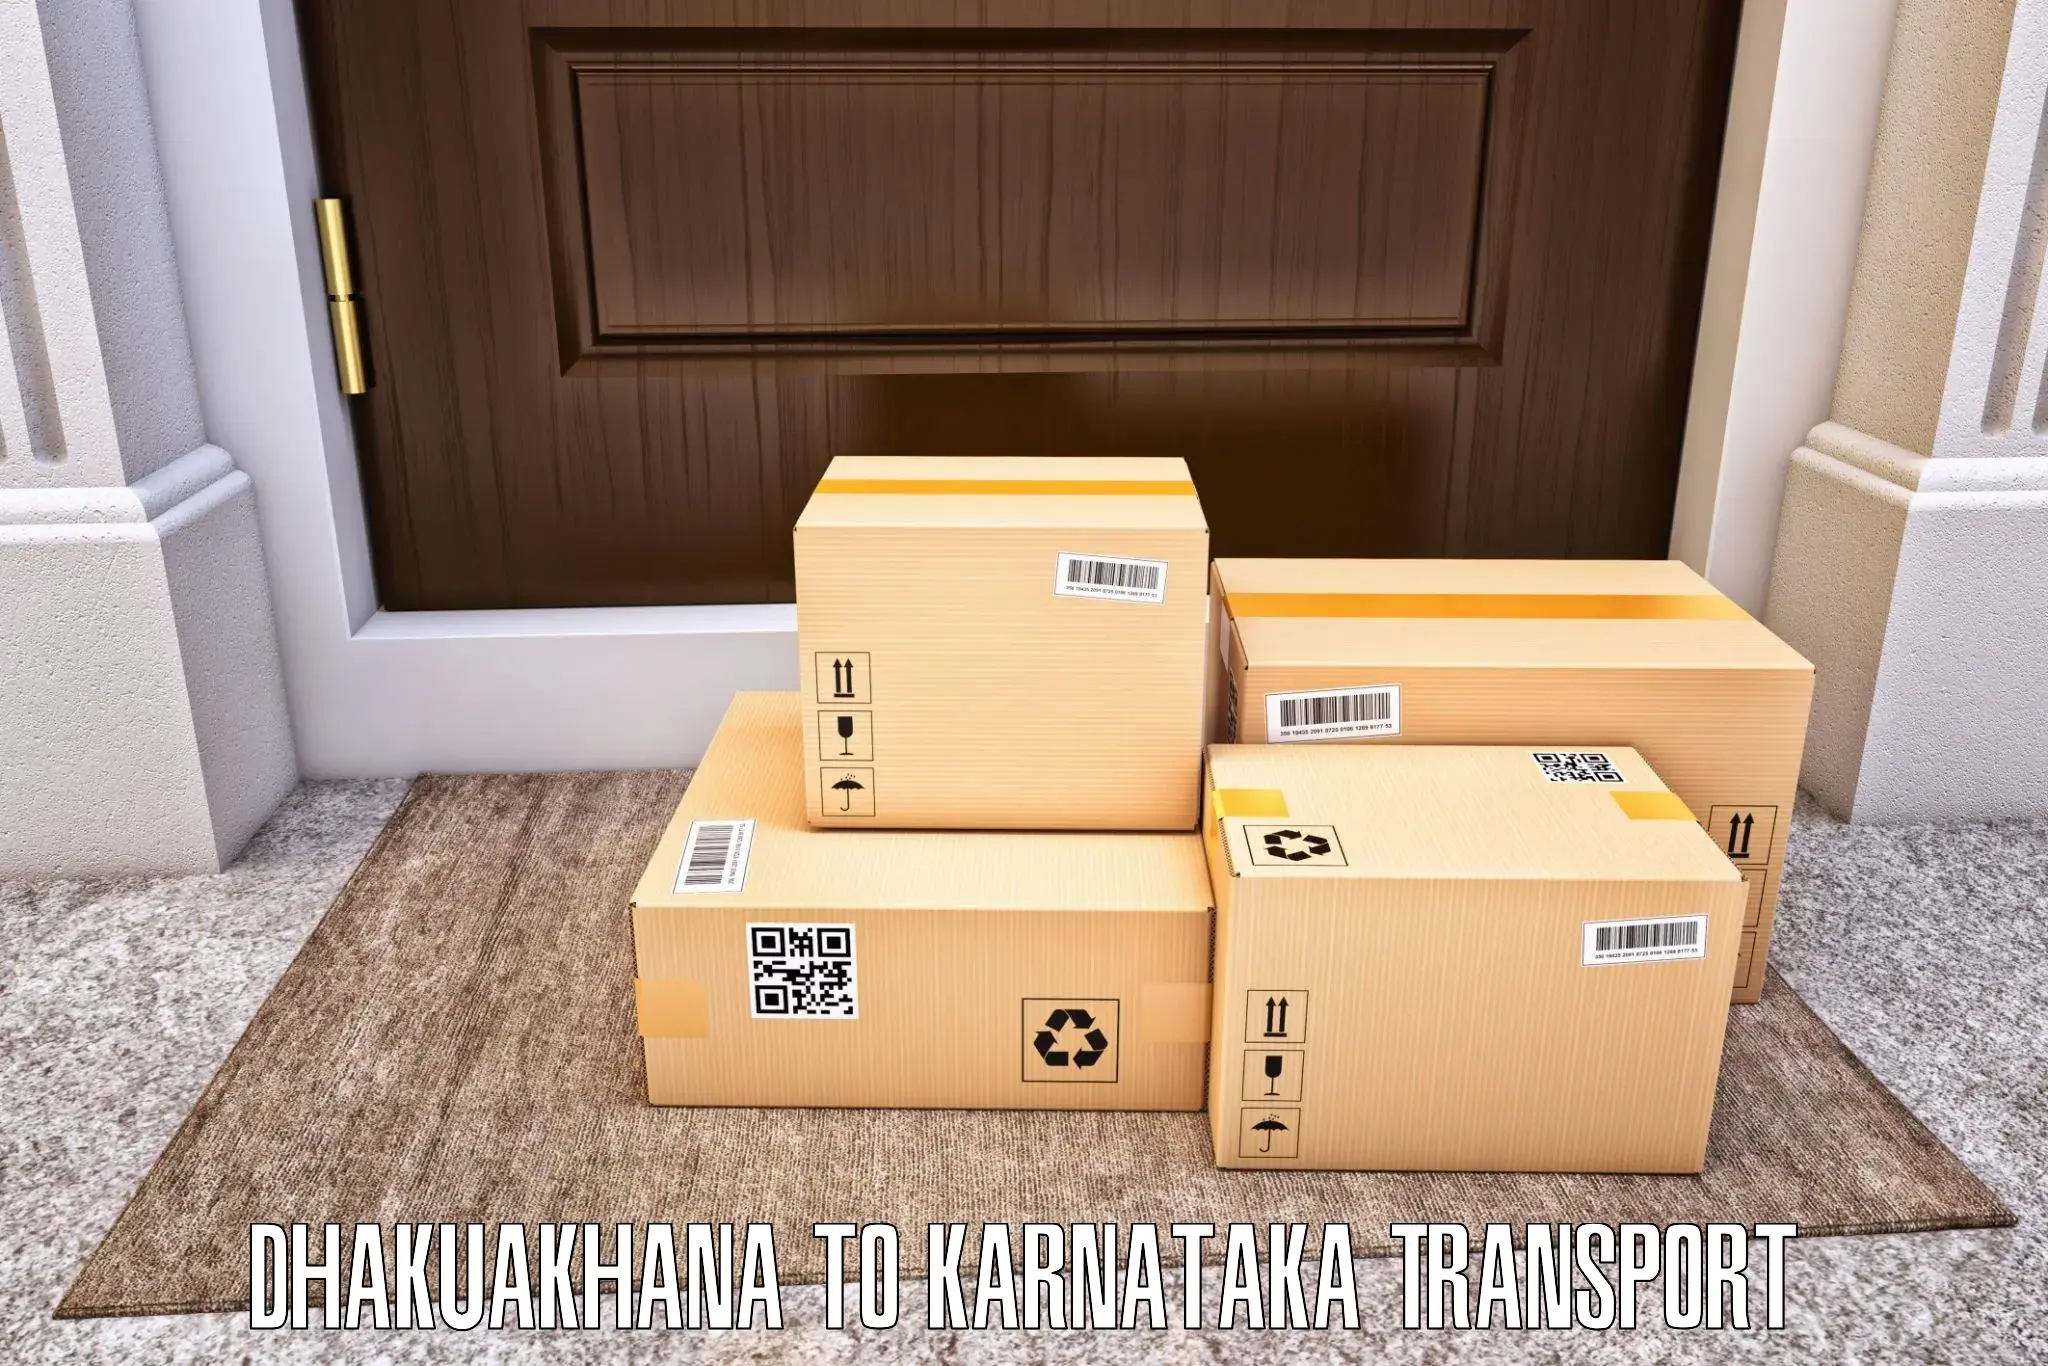 Cargo transportation services Dhakuakhana to Kurugodu